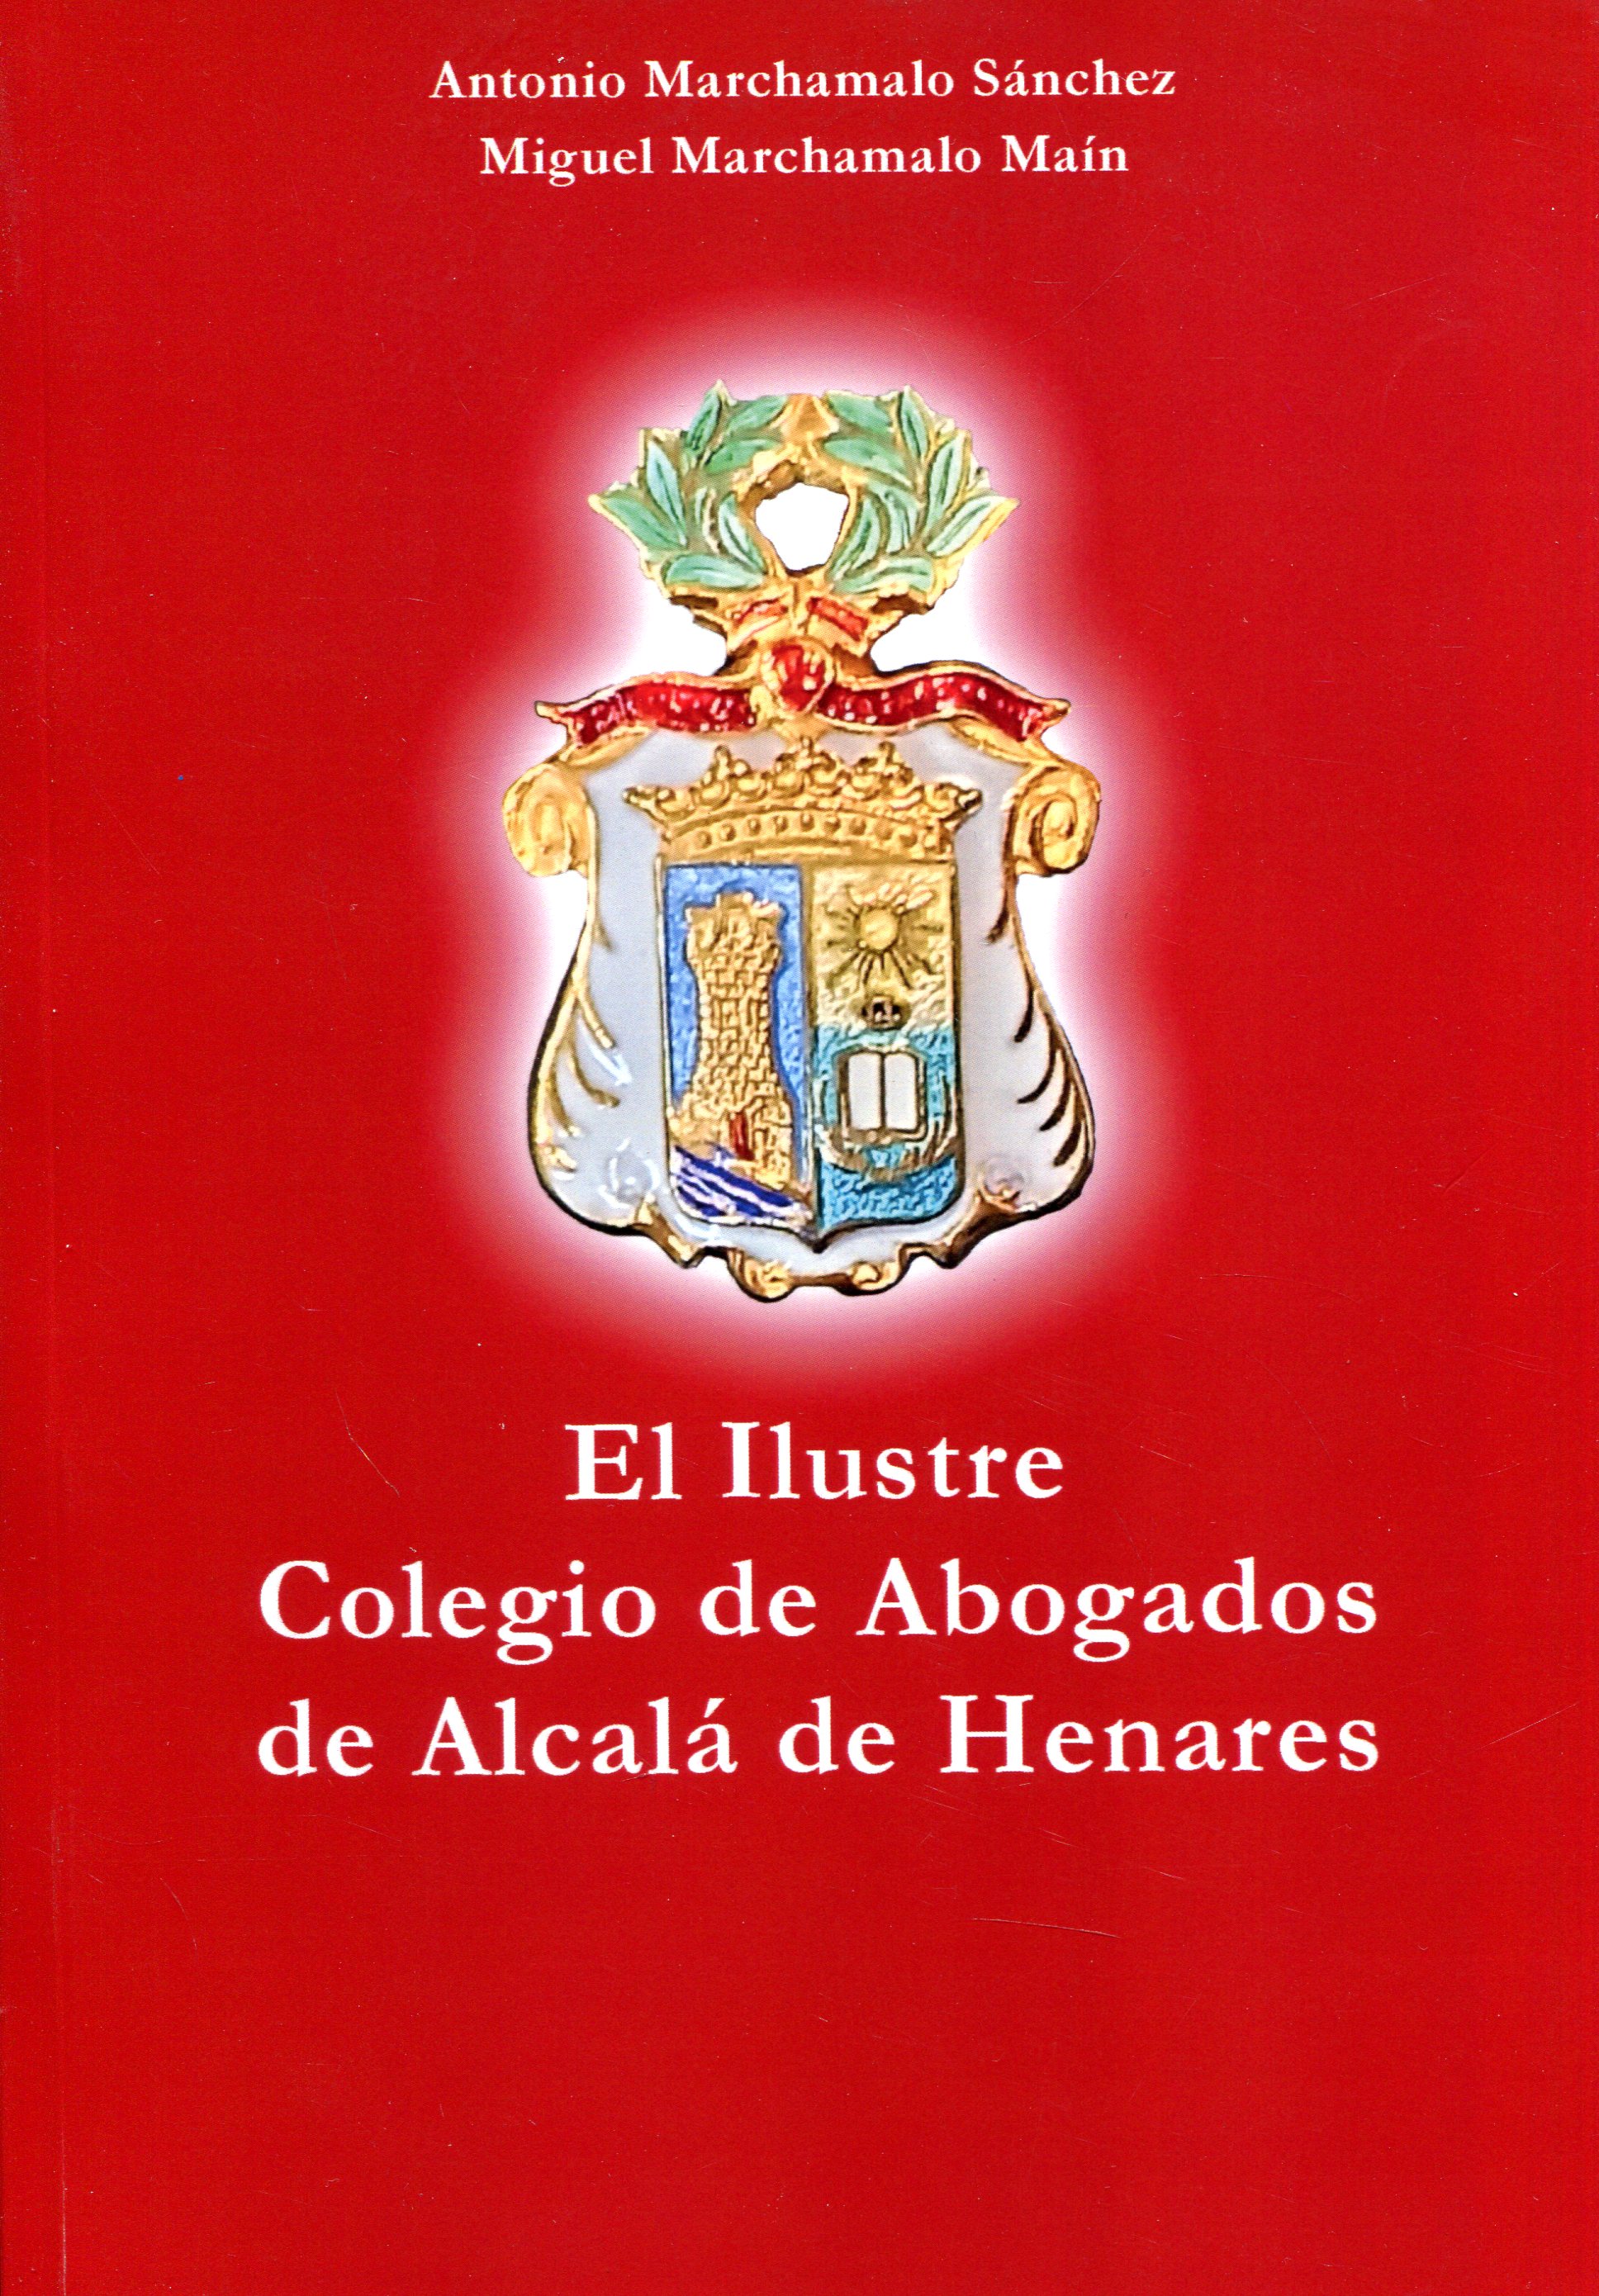 El Ilustre Colegio de Abogados de Alcalá de Henares